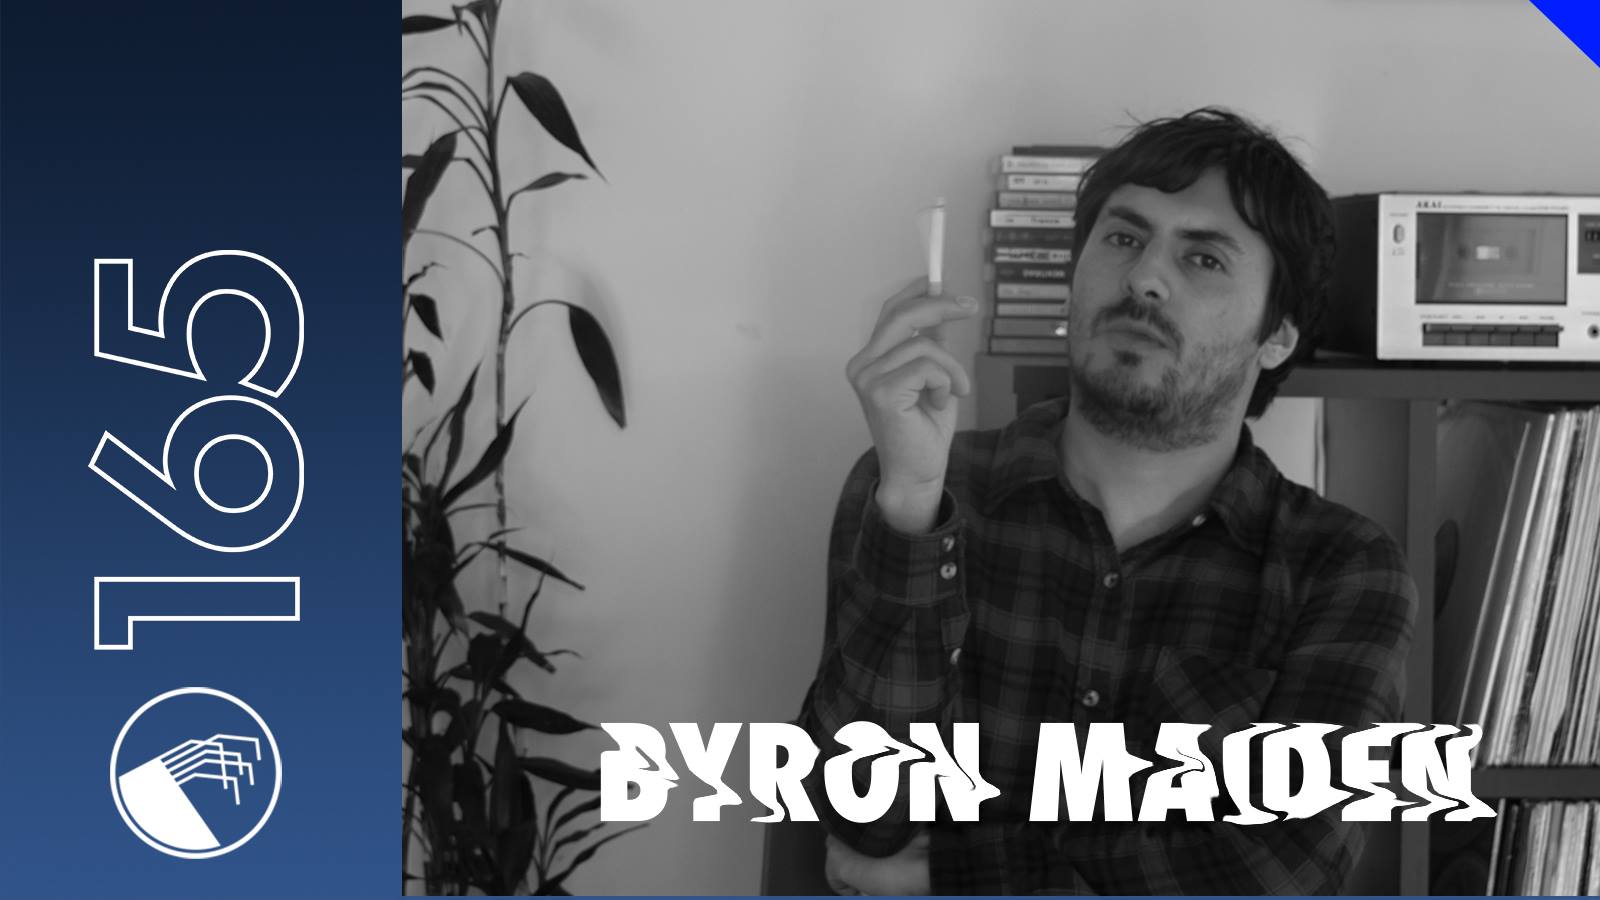 165 Byron Maiden